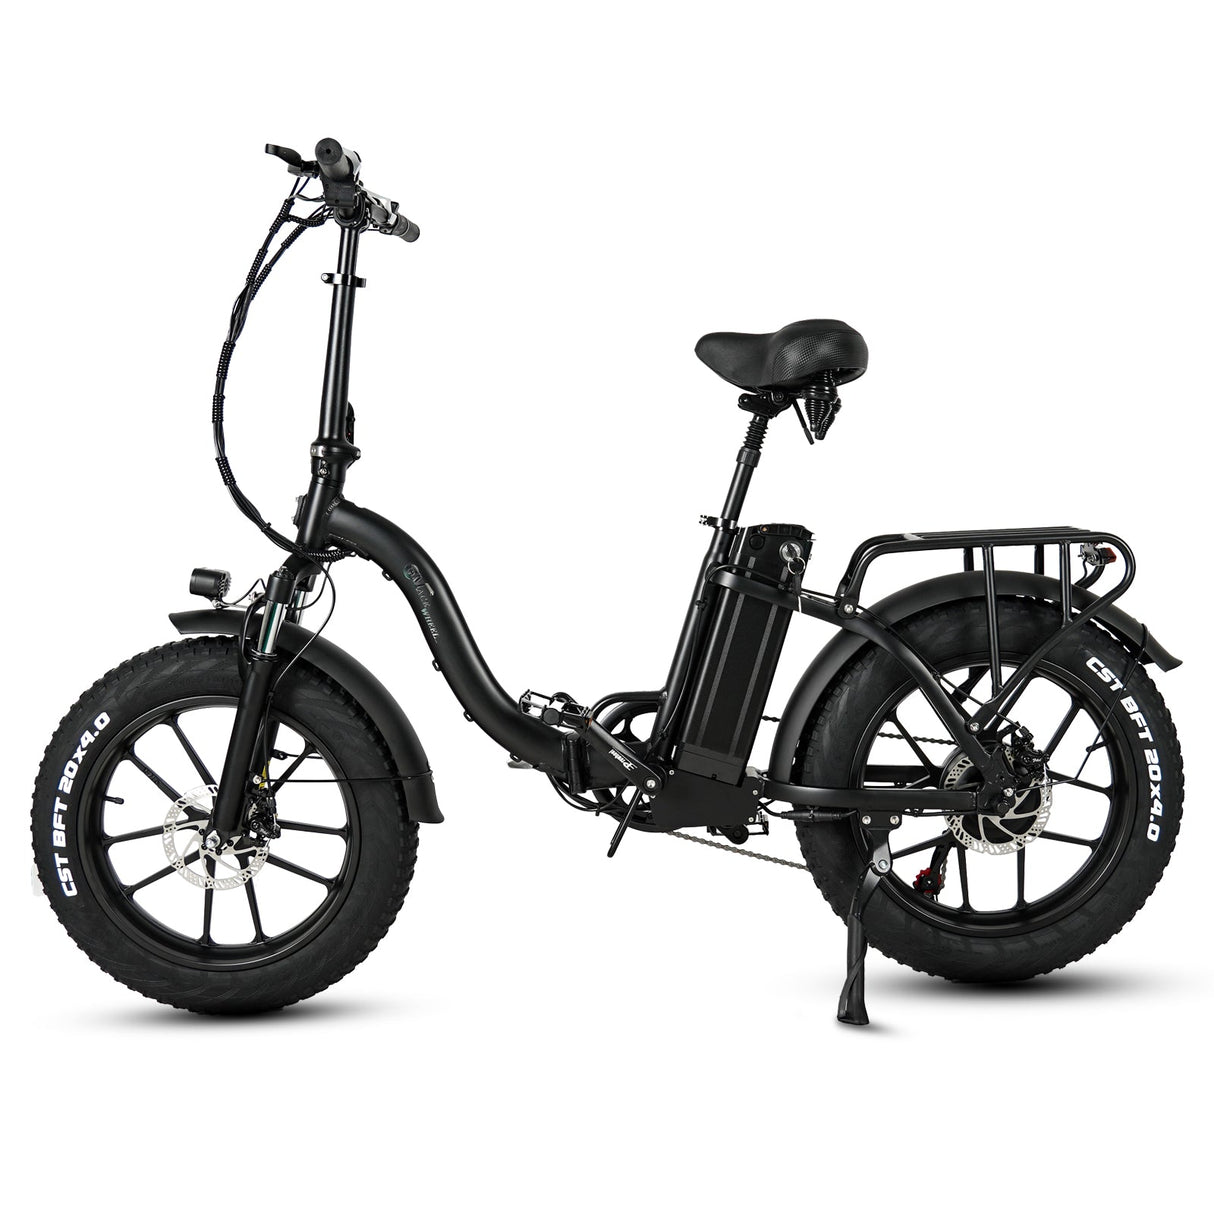 CMACEWHEEL Y20 20'' Step-through Folding Electric Fat Bike 750W Motor 48V 18Ah Battery